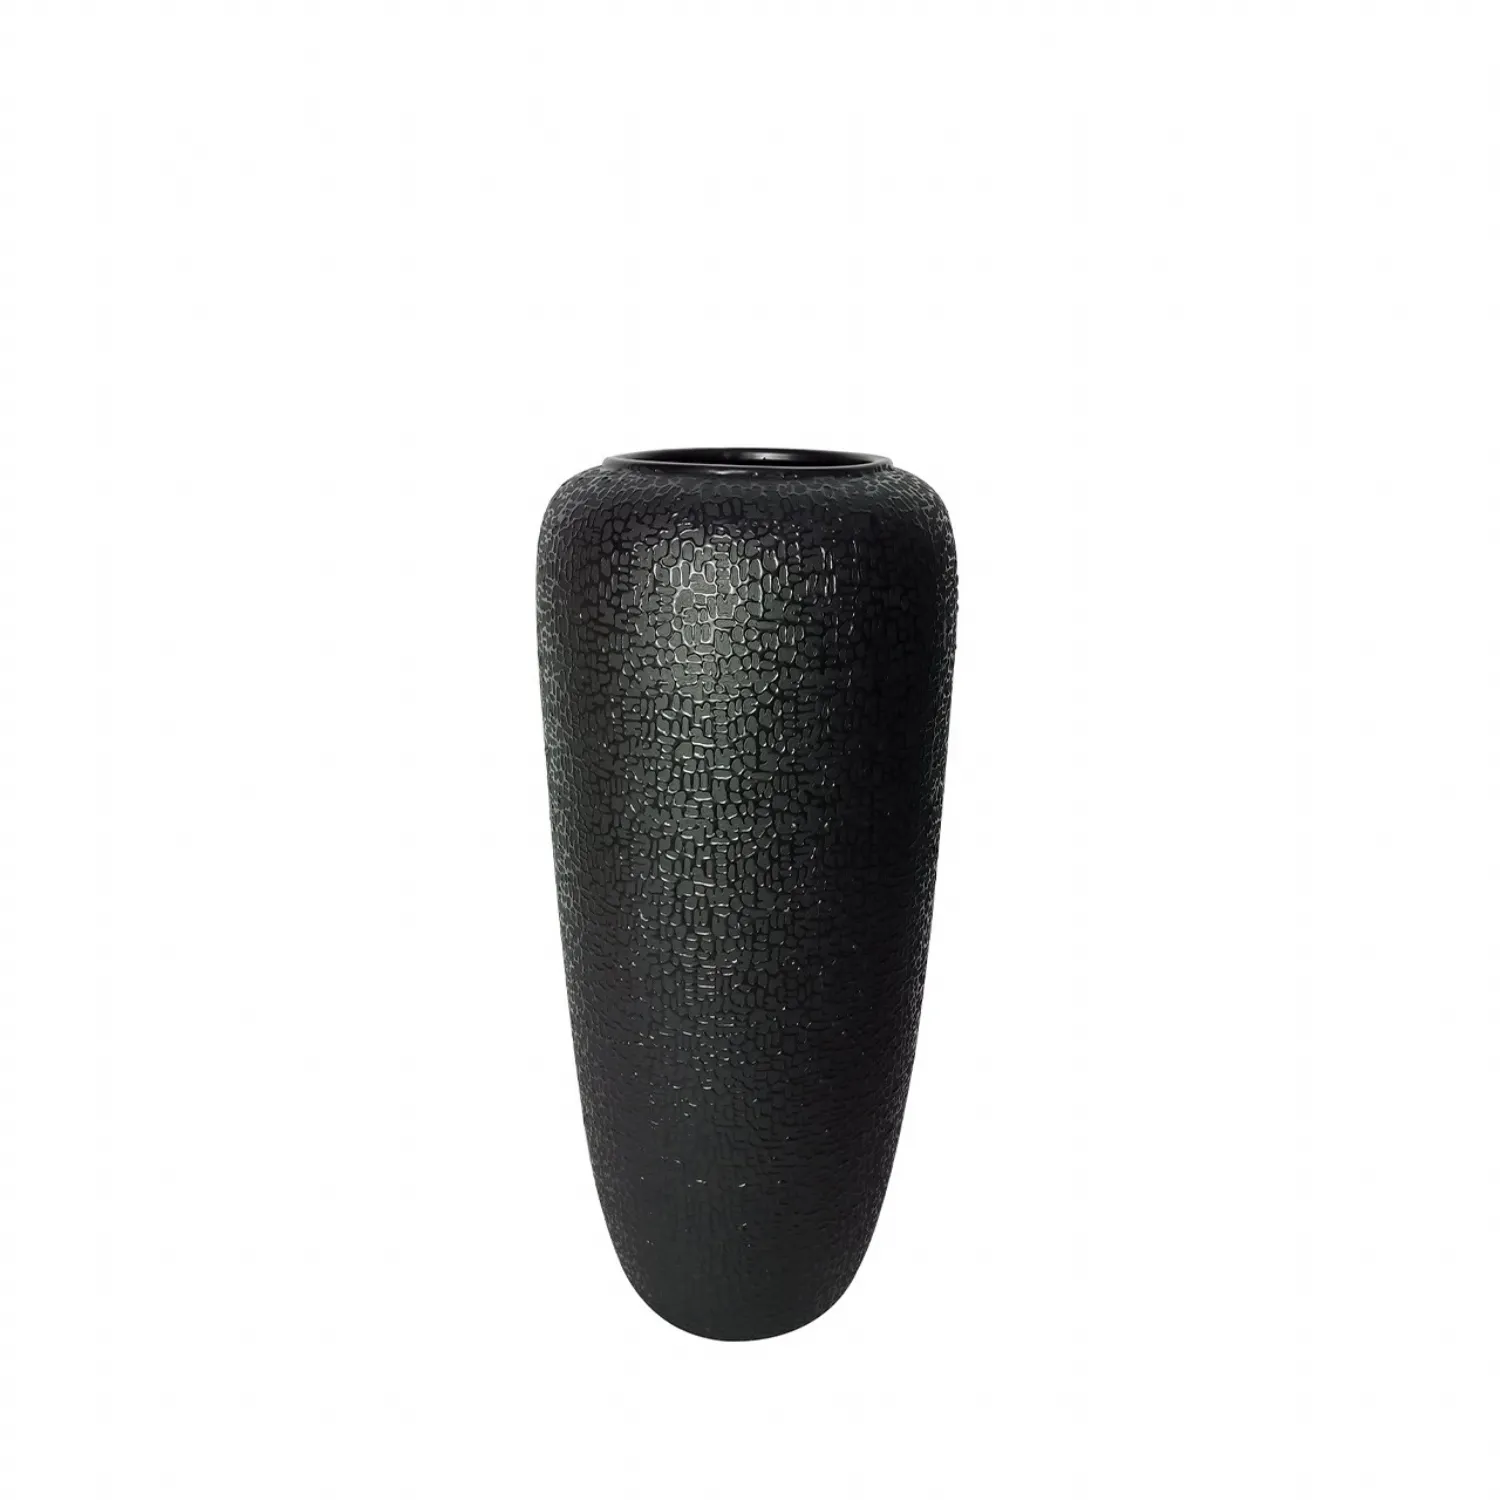 50. 5cm Black Textured Ceramic Floor Vase